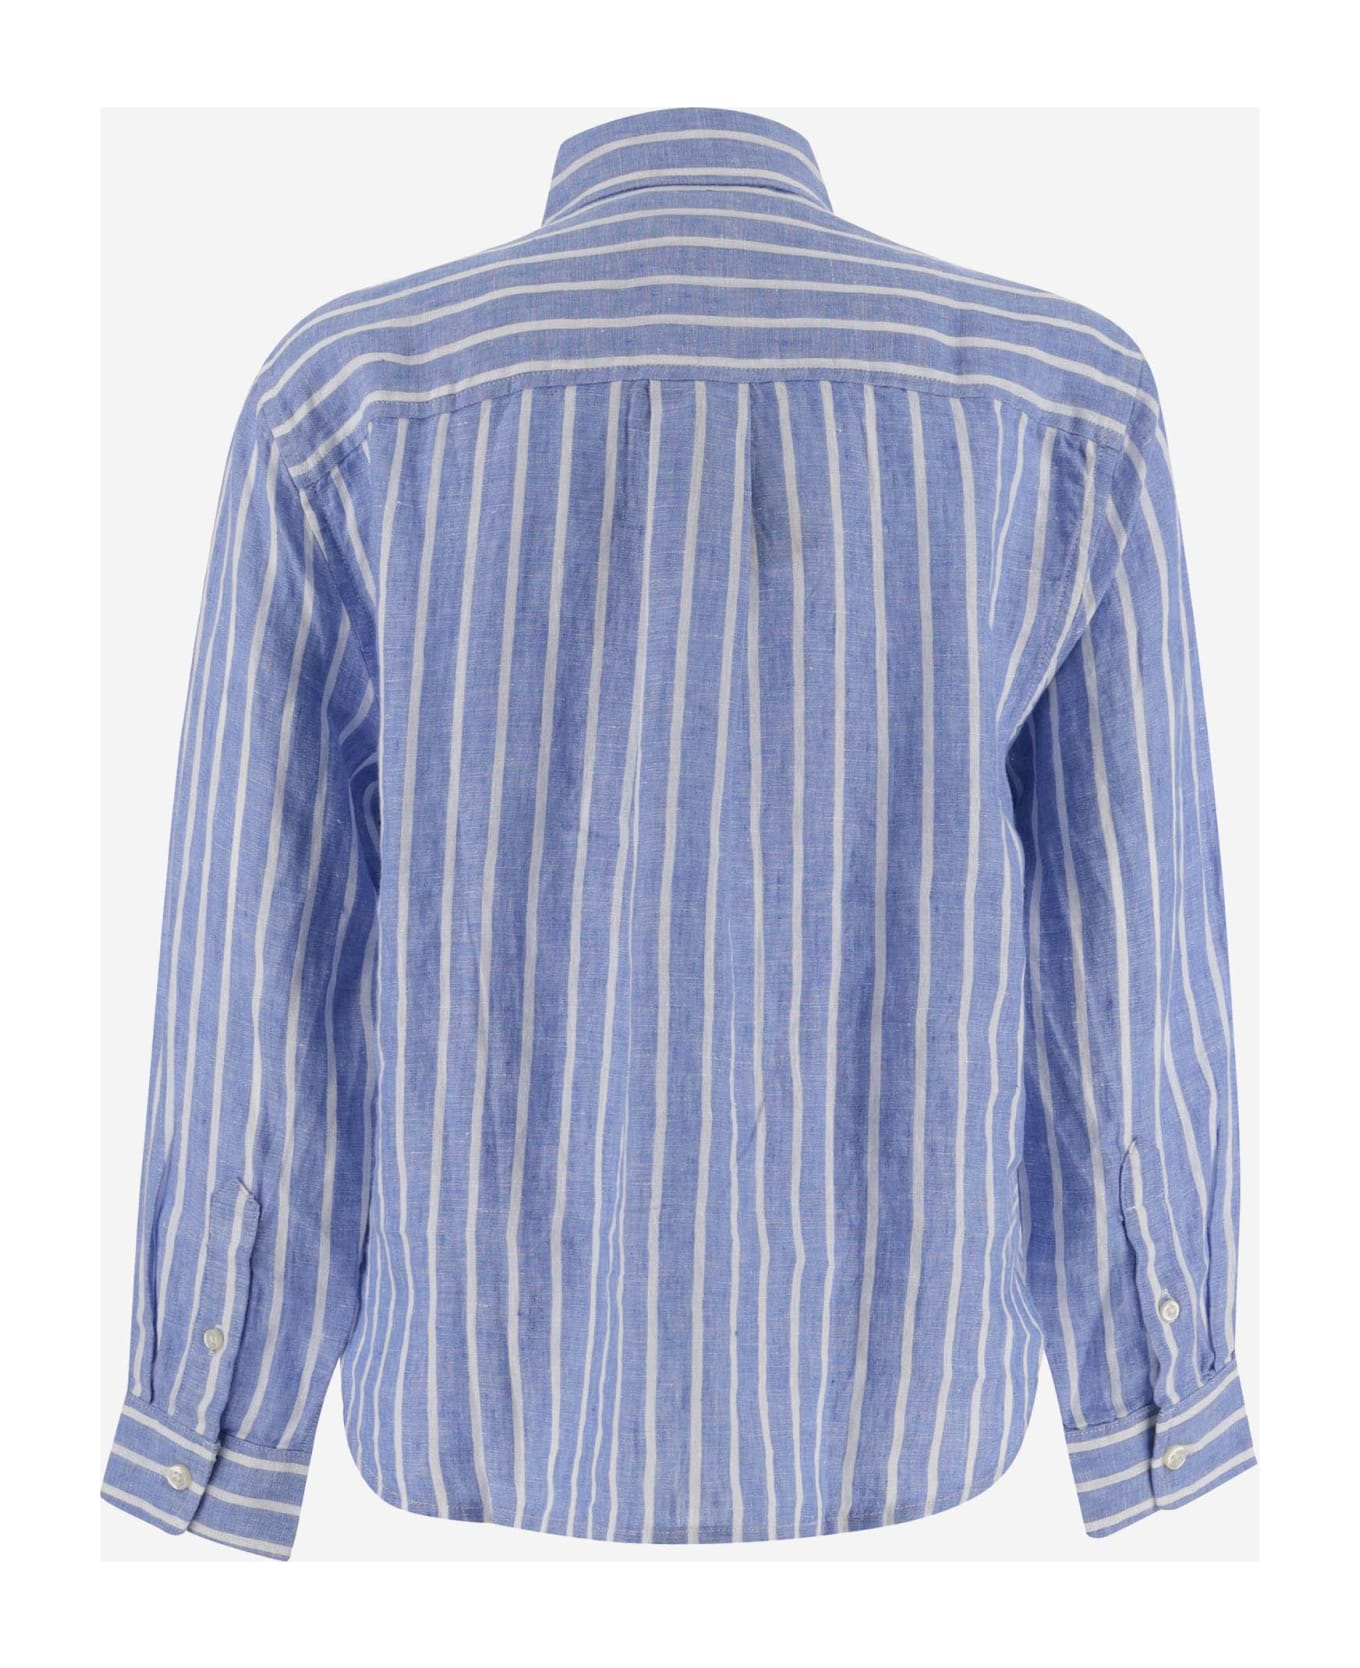 Polo Ralph Lauren Striped Linen Shirt With Logo - Blue